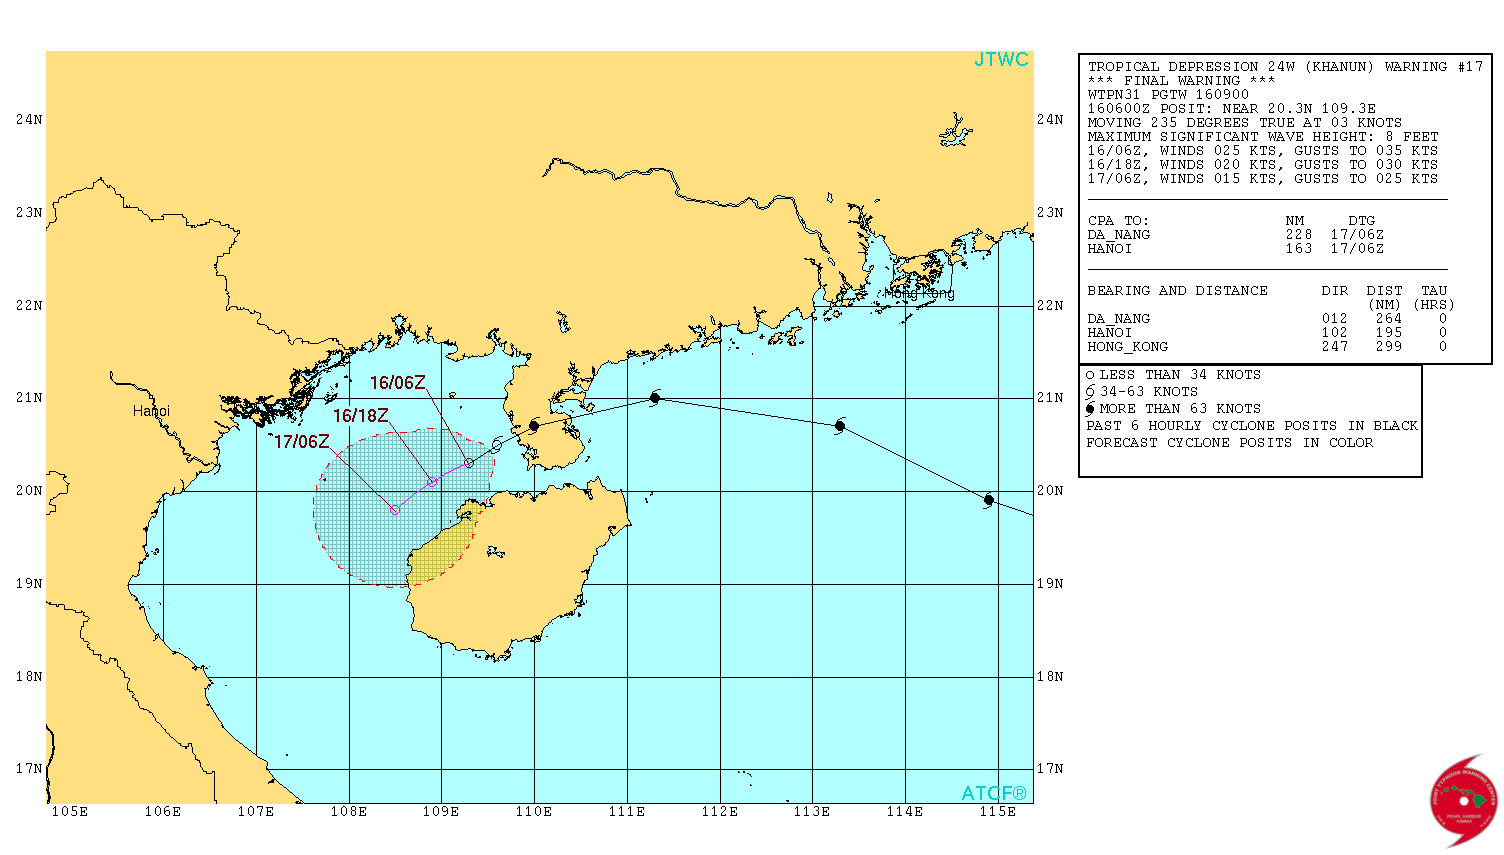 Tropical Depression 24W - Khanun - JTWC forecast track